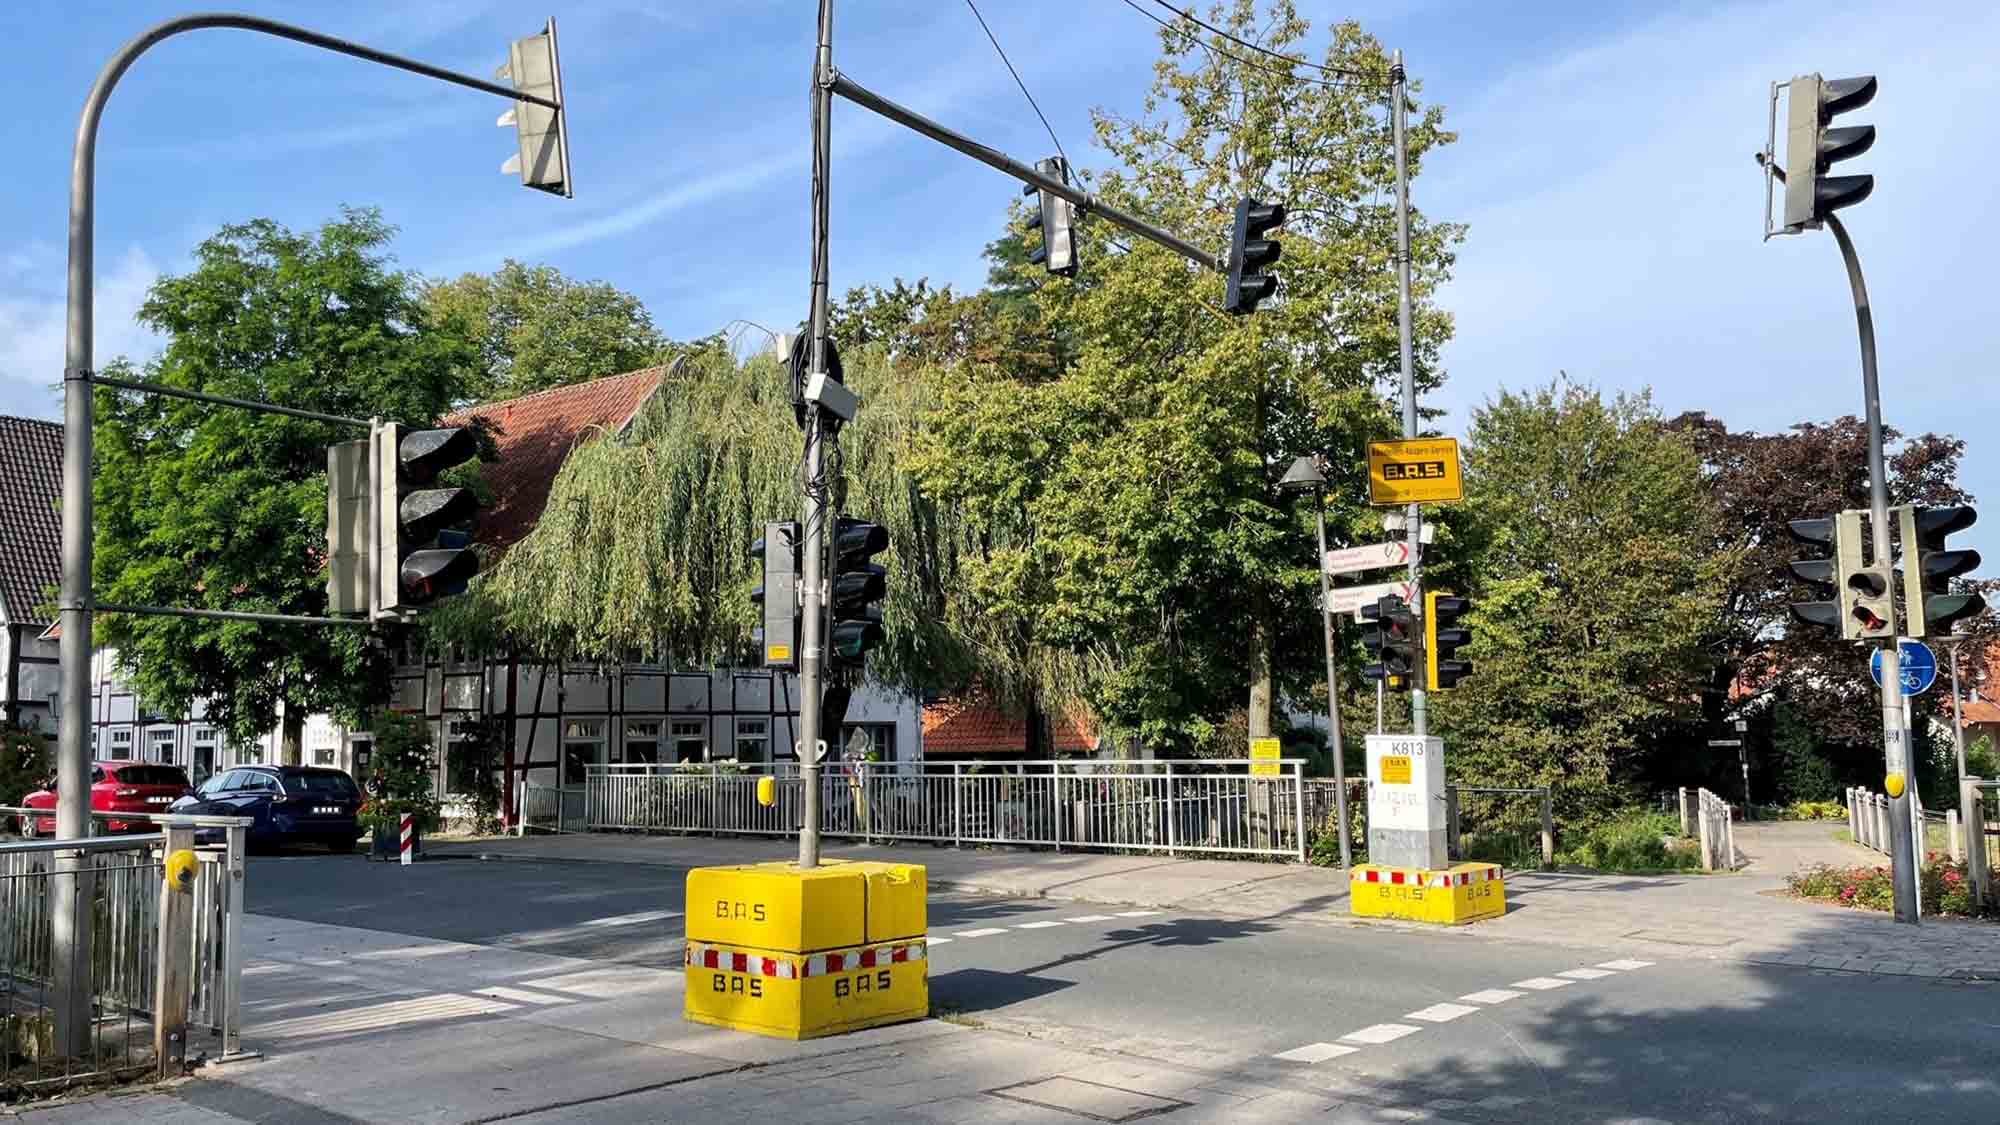 Rietberg: Radfahrer und Fußgänger haben bald Vorfahrt, Verkehrsversuch auf der Rathausstraße am Nordtor